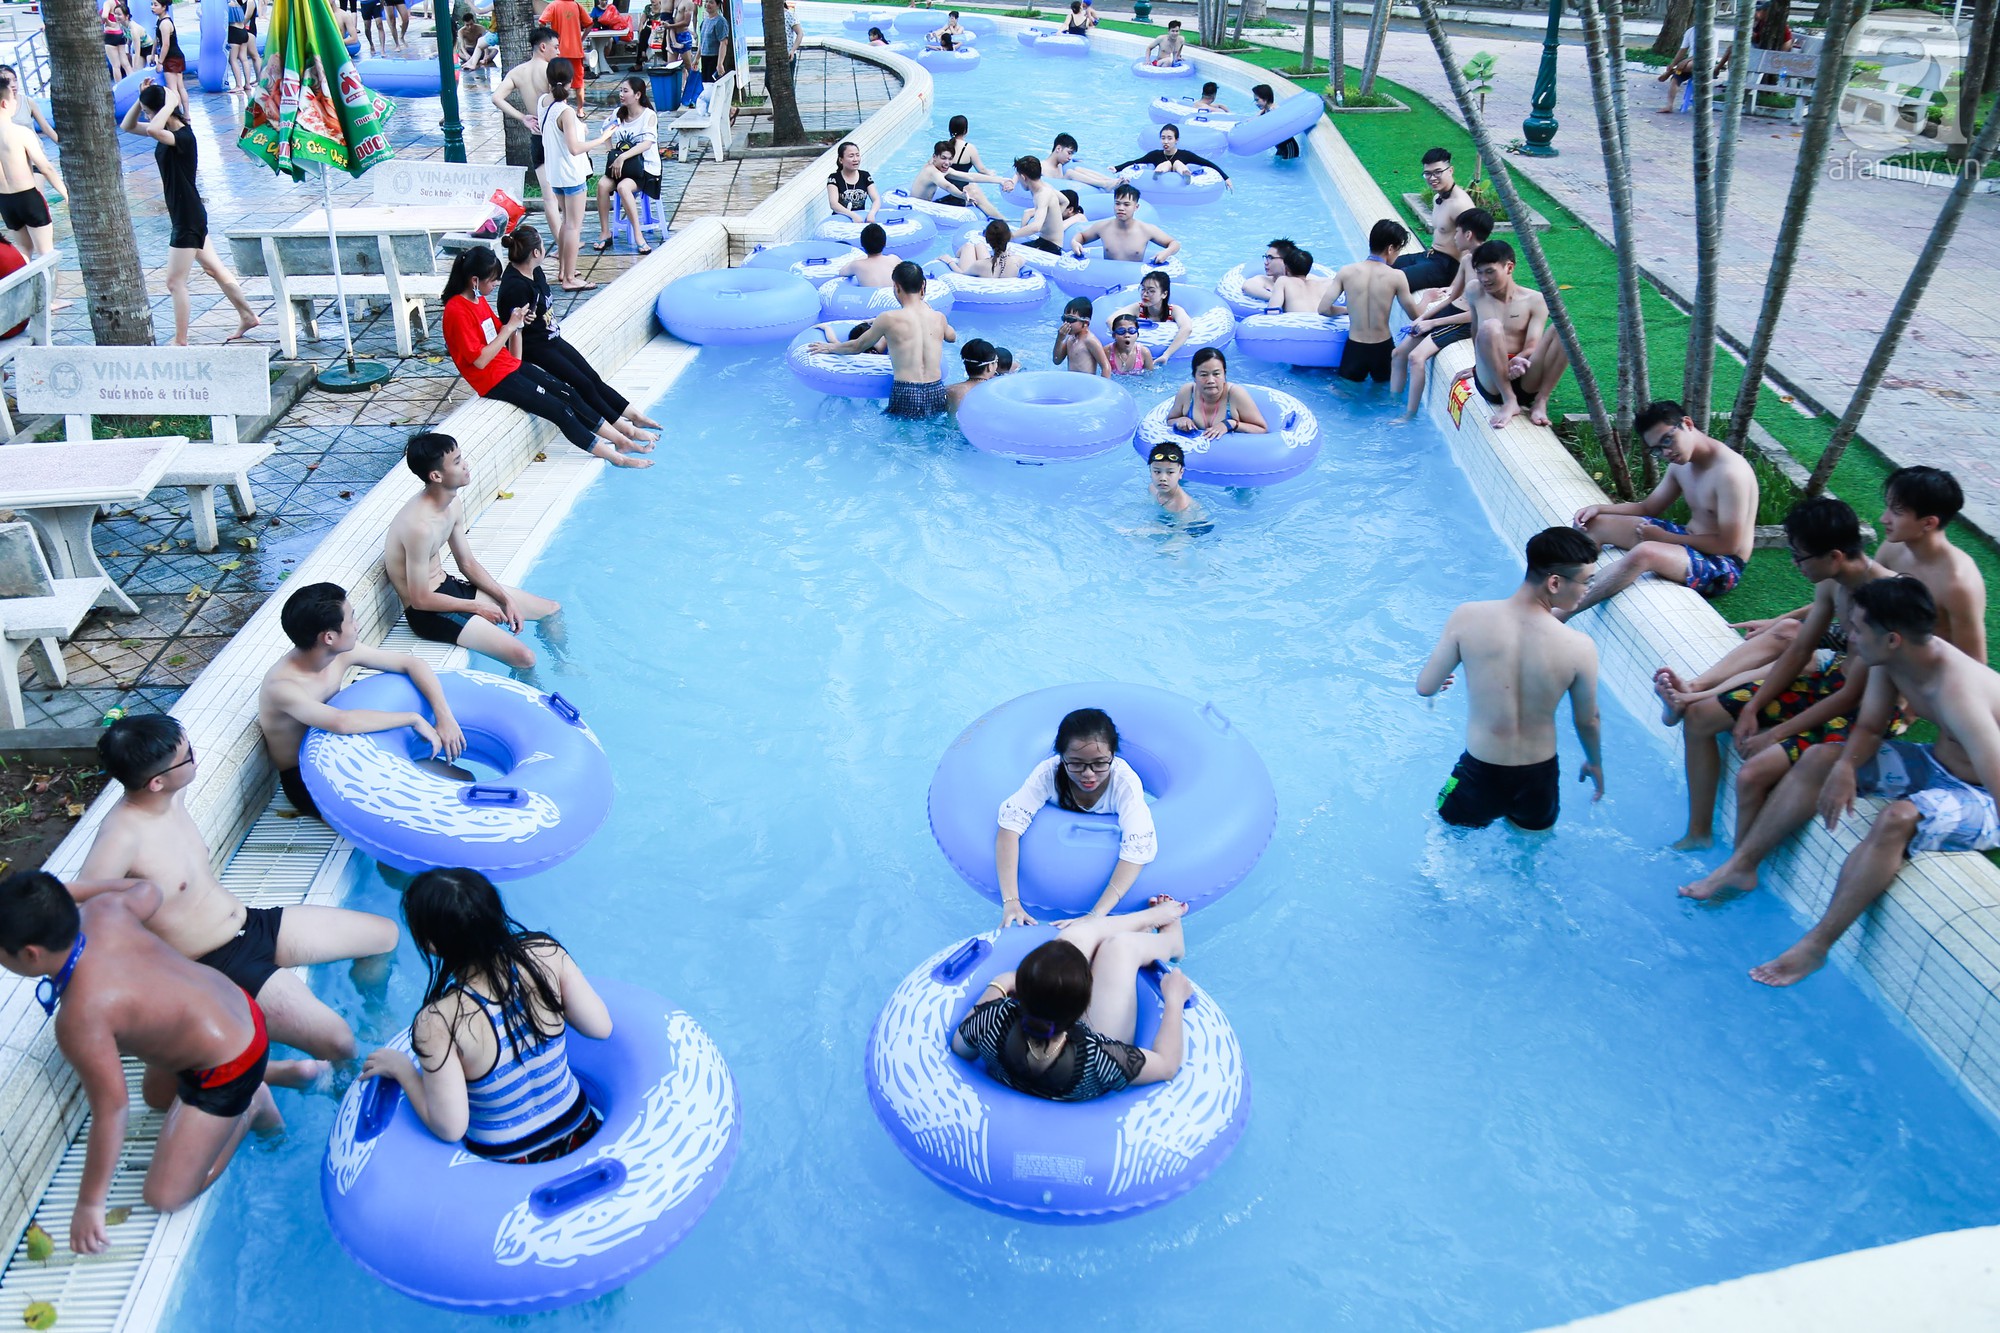 Chùm ảnh: Dân tình thỏa sức vùng vẫy giải nhiệt tại “bể bơi” lớn nhất Hà Nội - Ảnh 1.